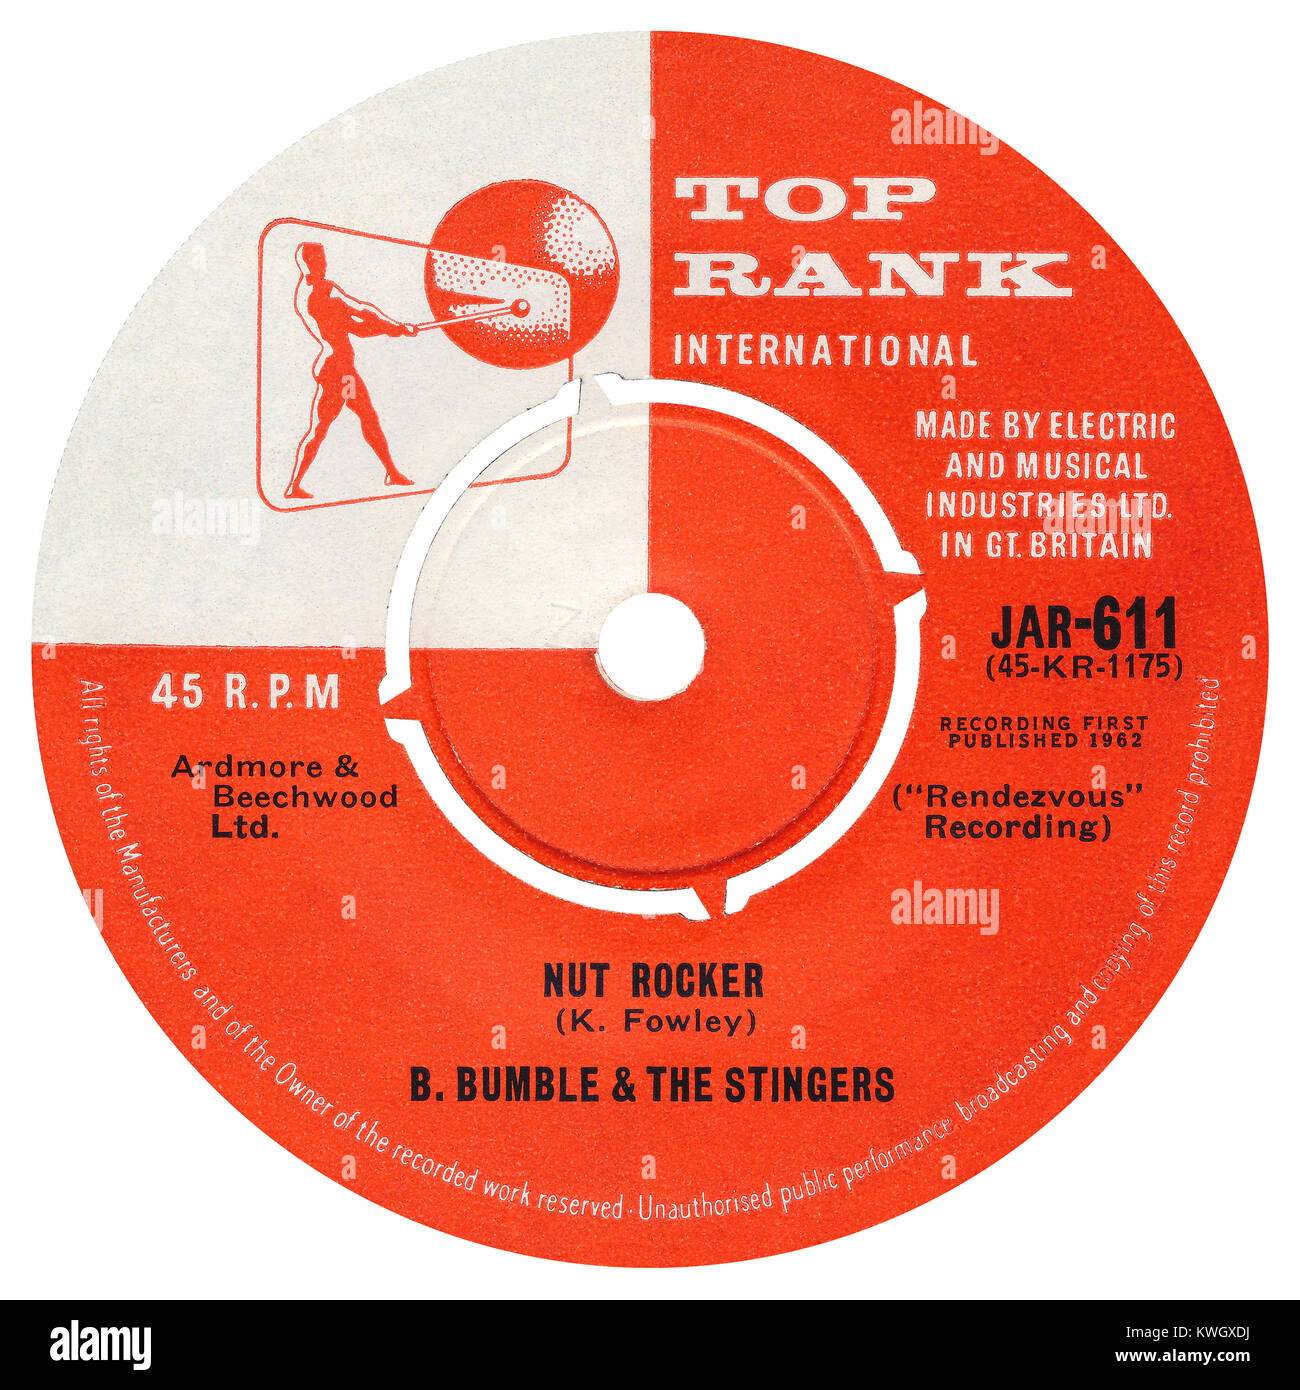 45 RPM 7' Uk etichetta discografica del dado bilanciere da B. Bumble e la Stinger. Rilasciato nel marzo 1962 sul rango sommitale etichetta. Foto Stock